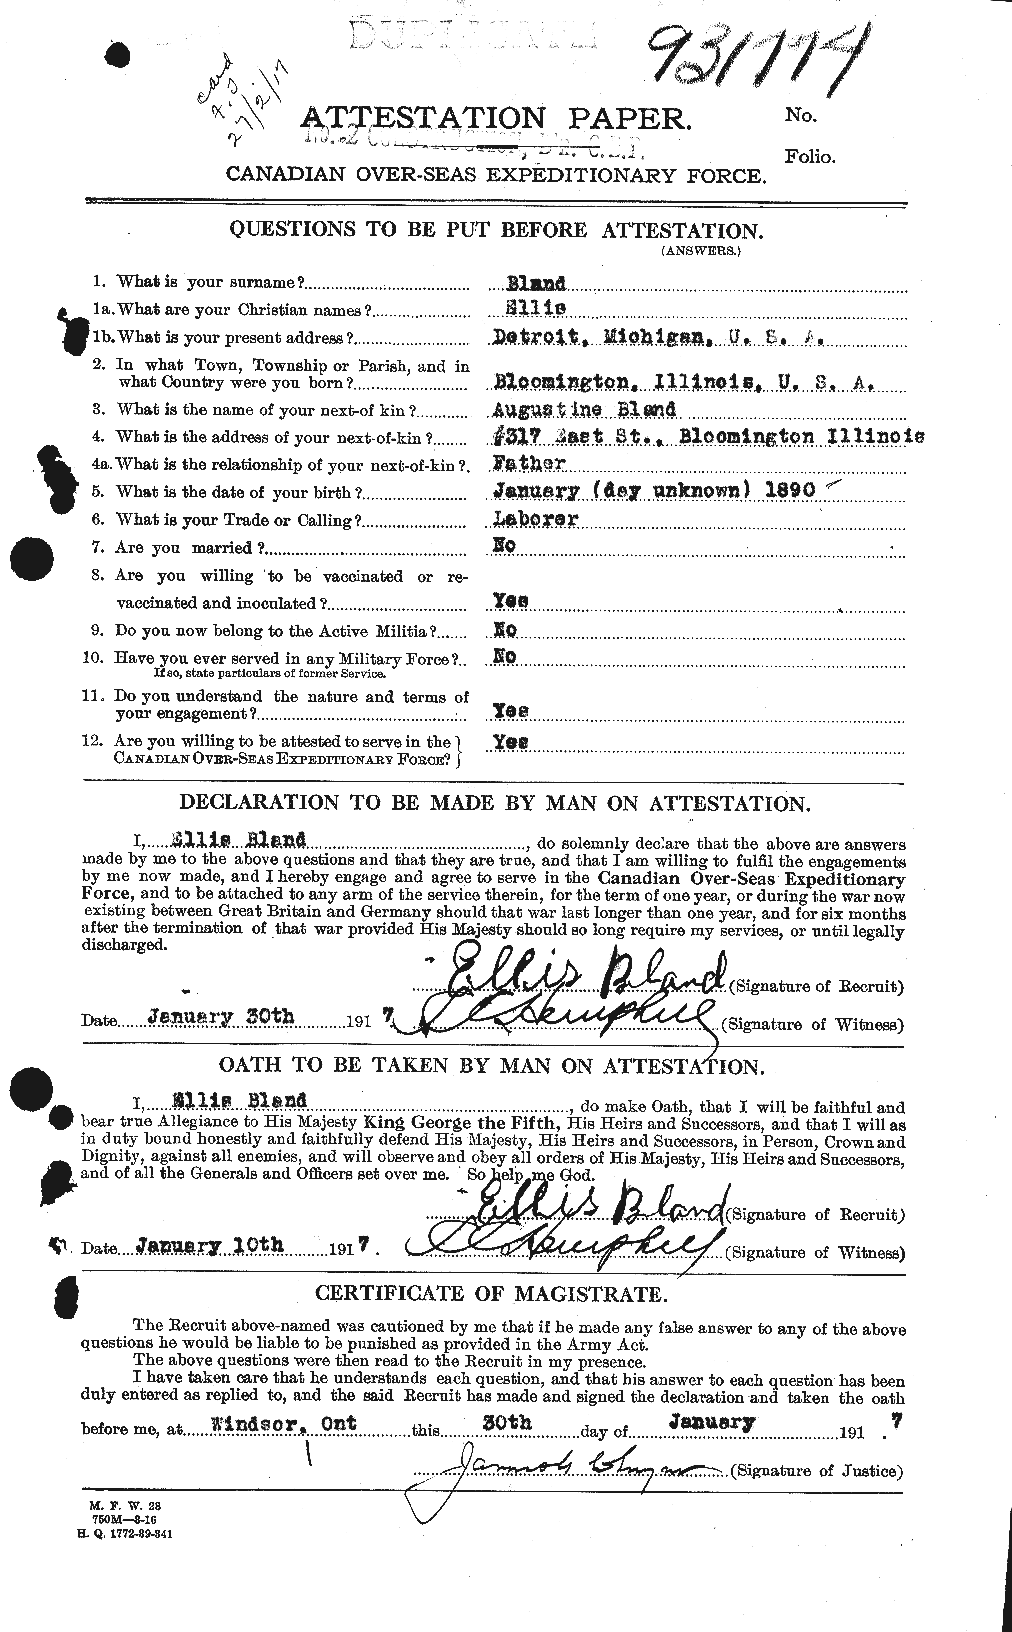 Dossiers du Personnel de la Première Guerre mondiale - CEC 240622a